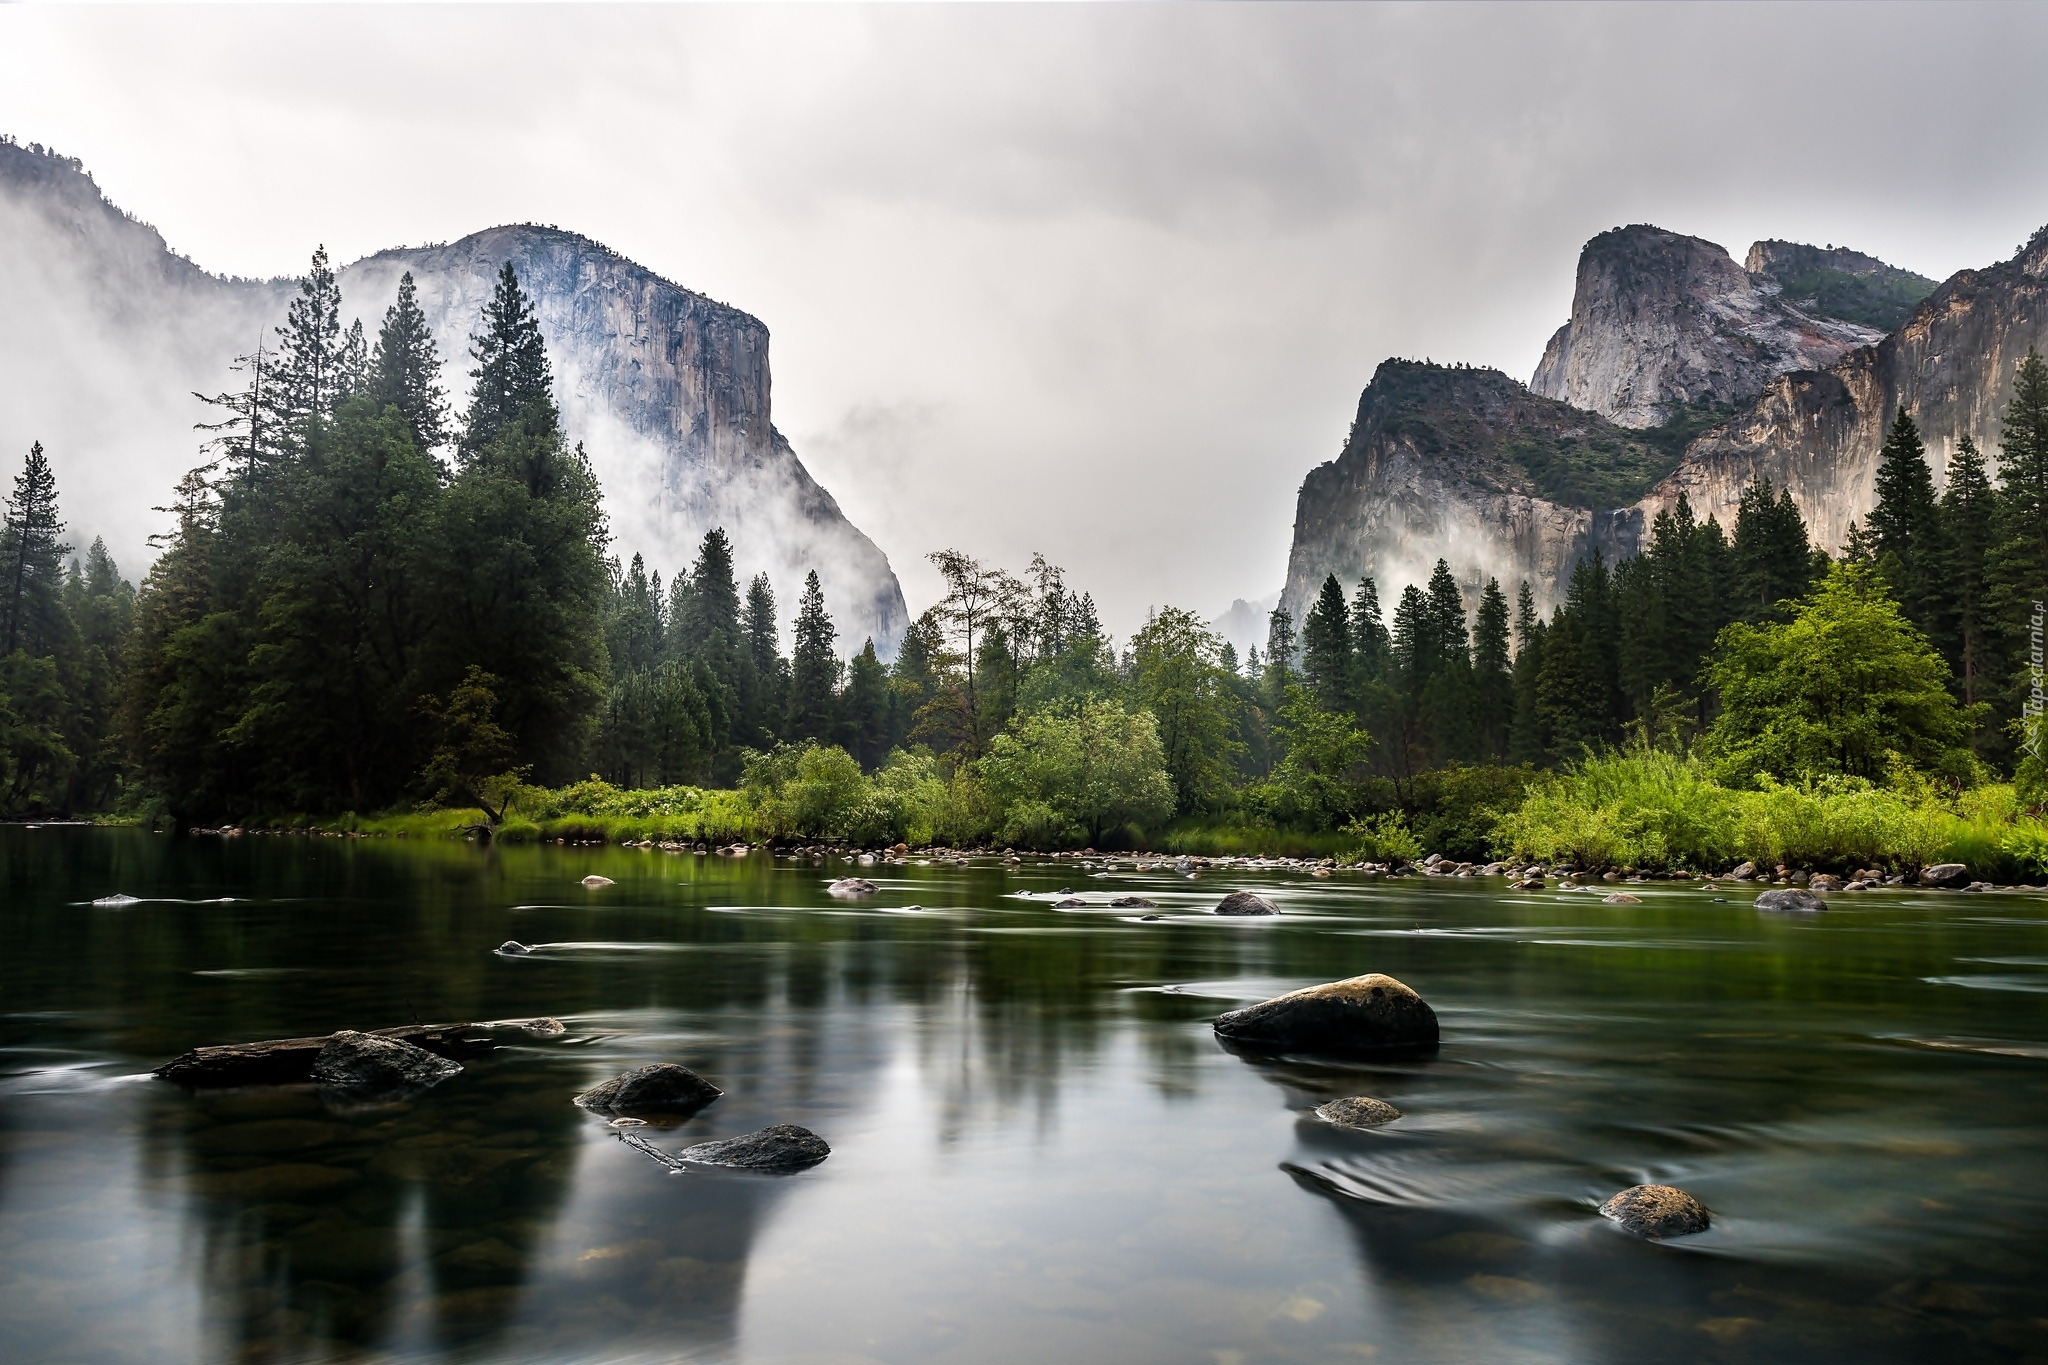 Stany Zjednoczone, Kalifornia, Park Narodowy Yosemite, Góry, Rzeka Merced, Kamienie, Drzewa